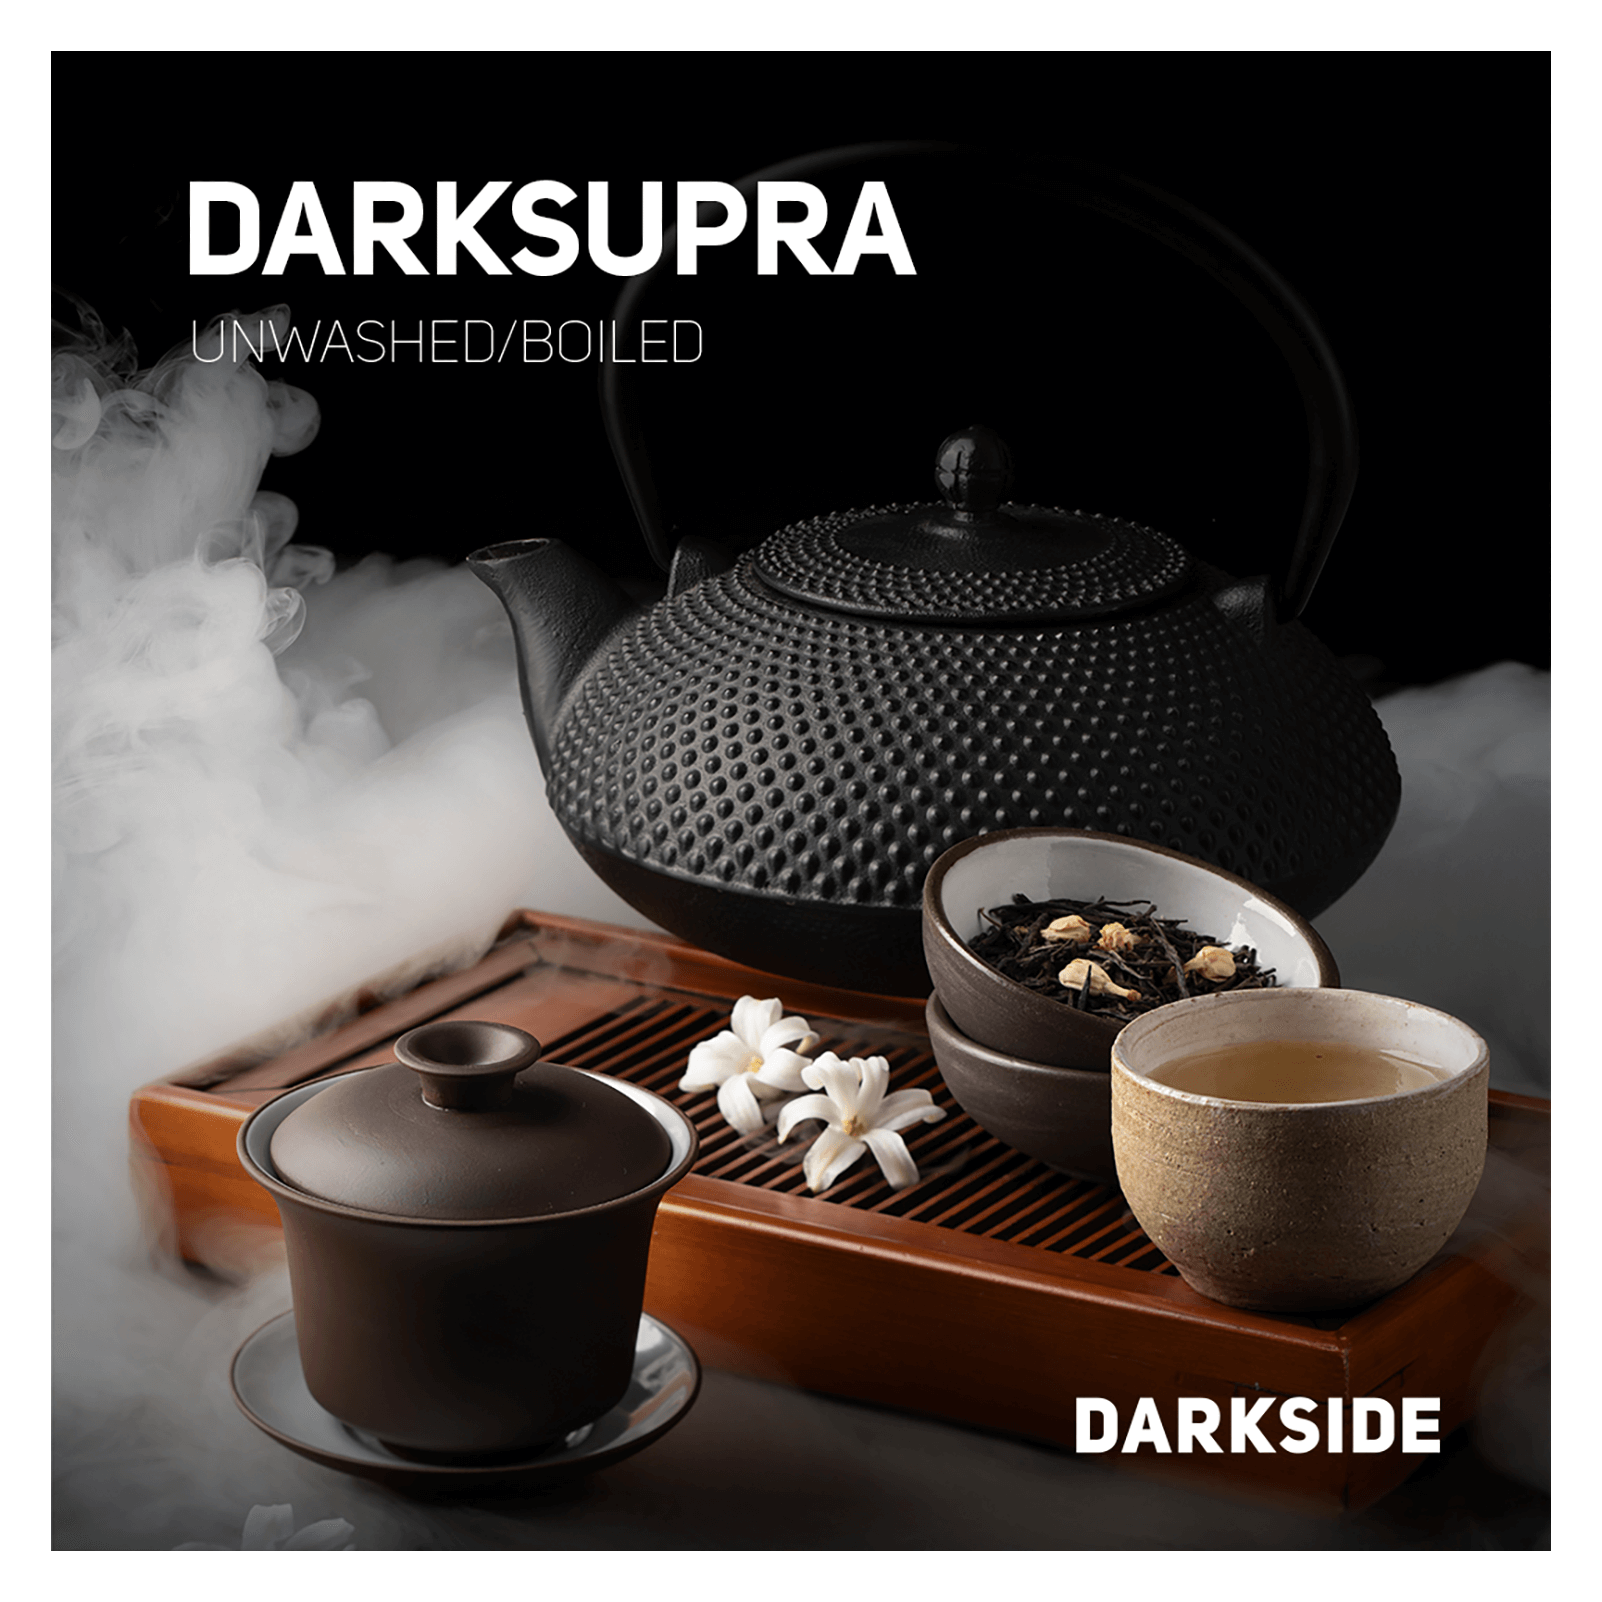 Darkside Core 25g - Darksupra